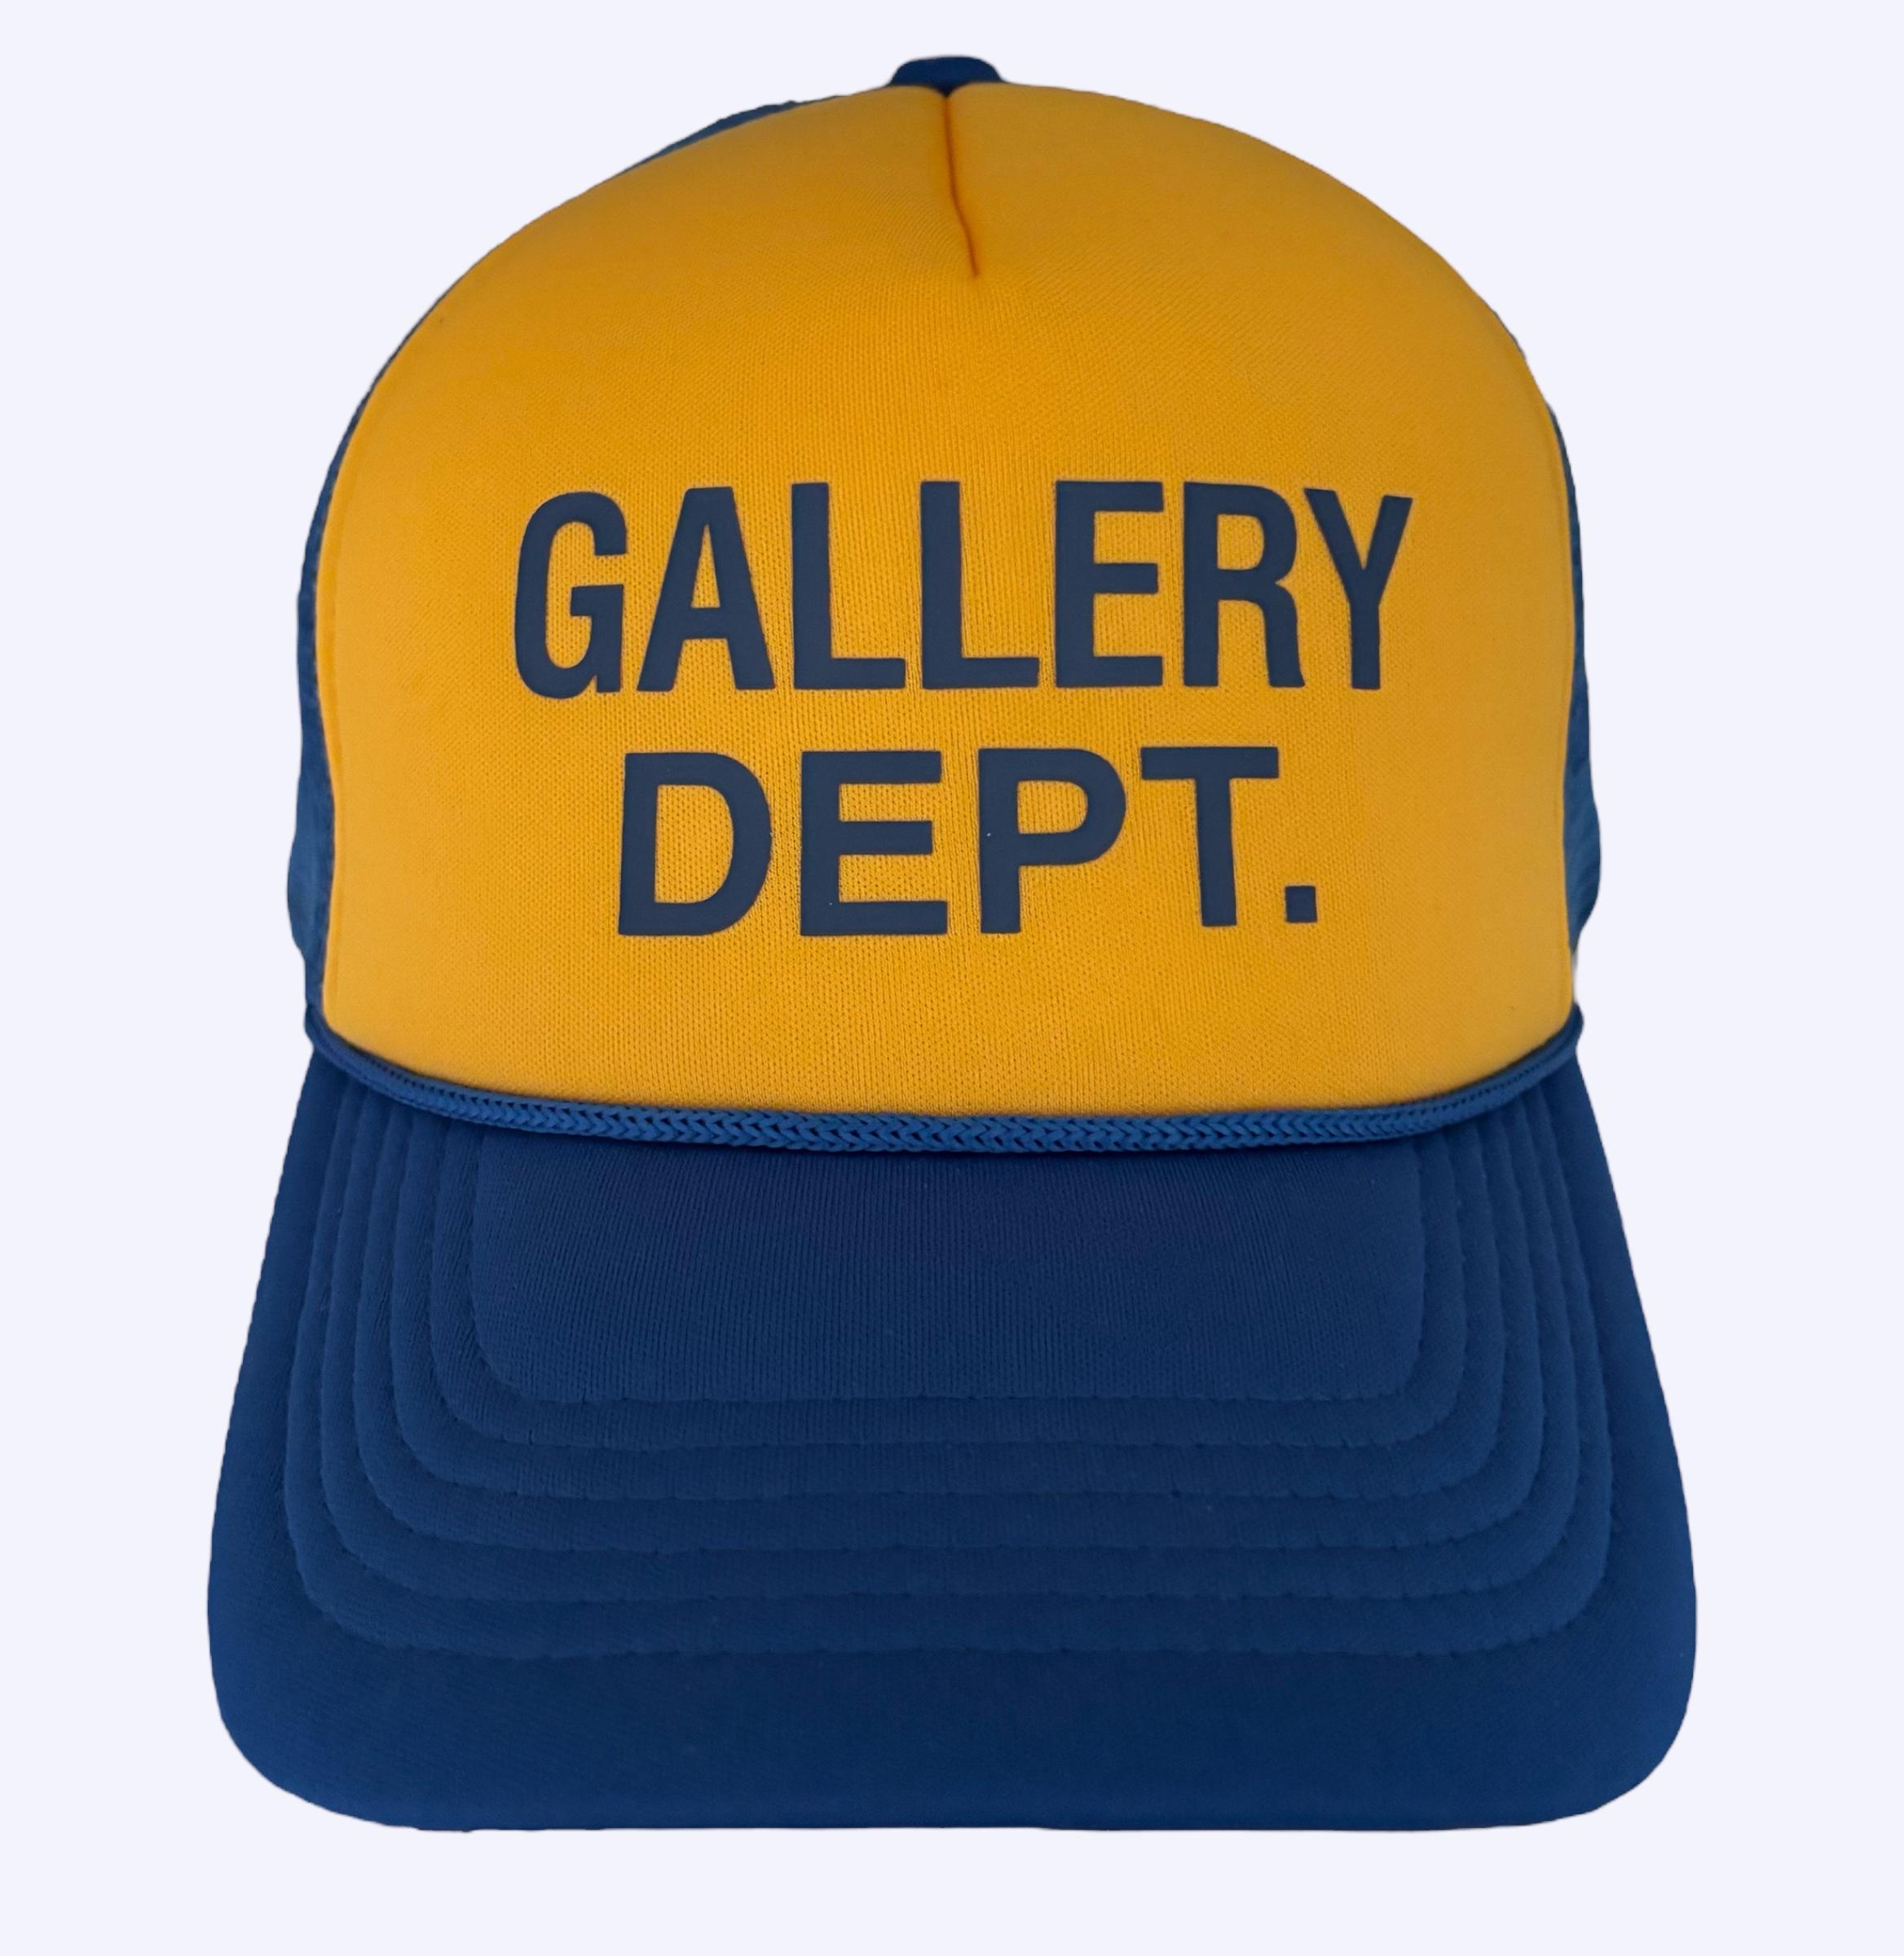 Gallery Dept. Trucker Snapback